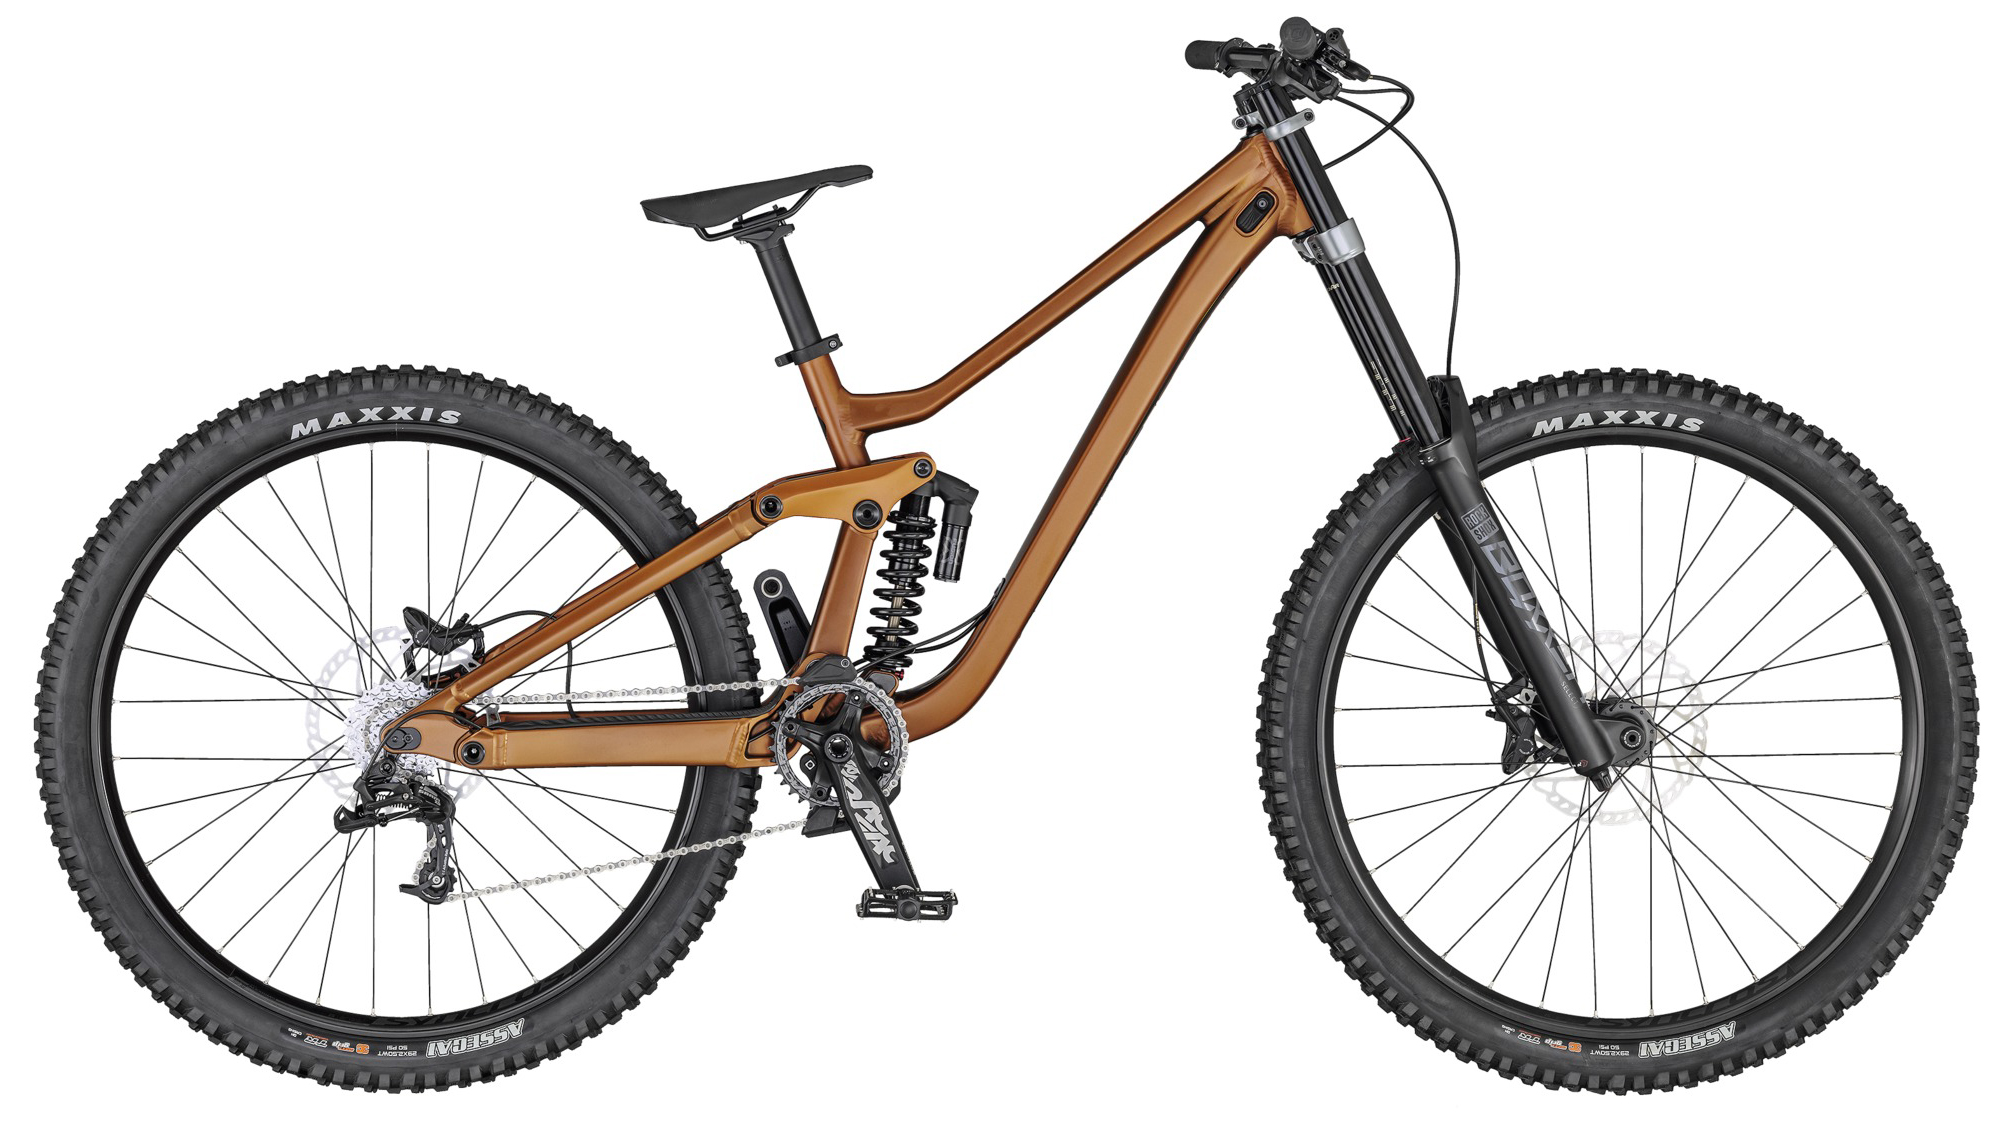  Отзывы о Двухподвесном велосипеде Scott Gambler 930 2020